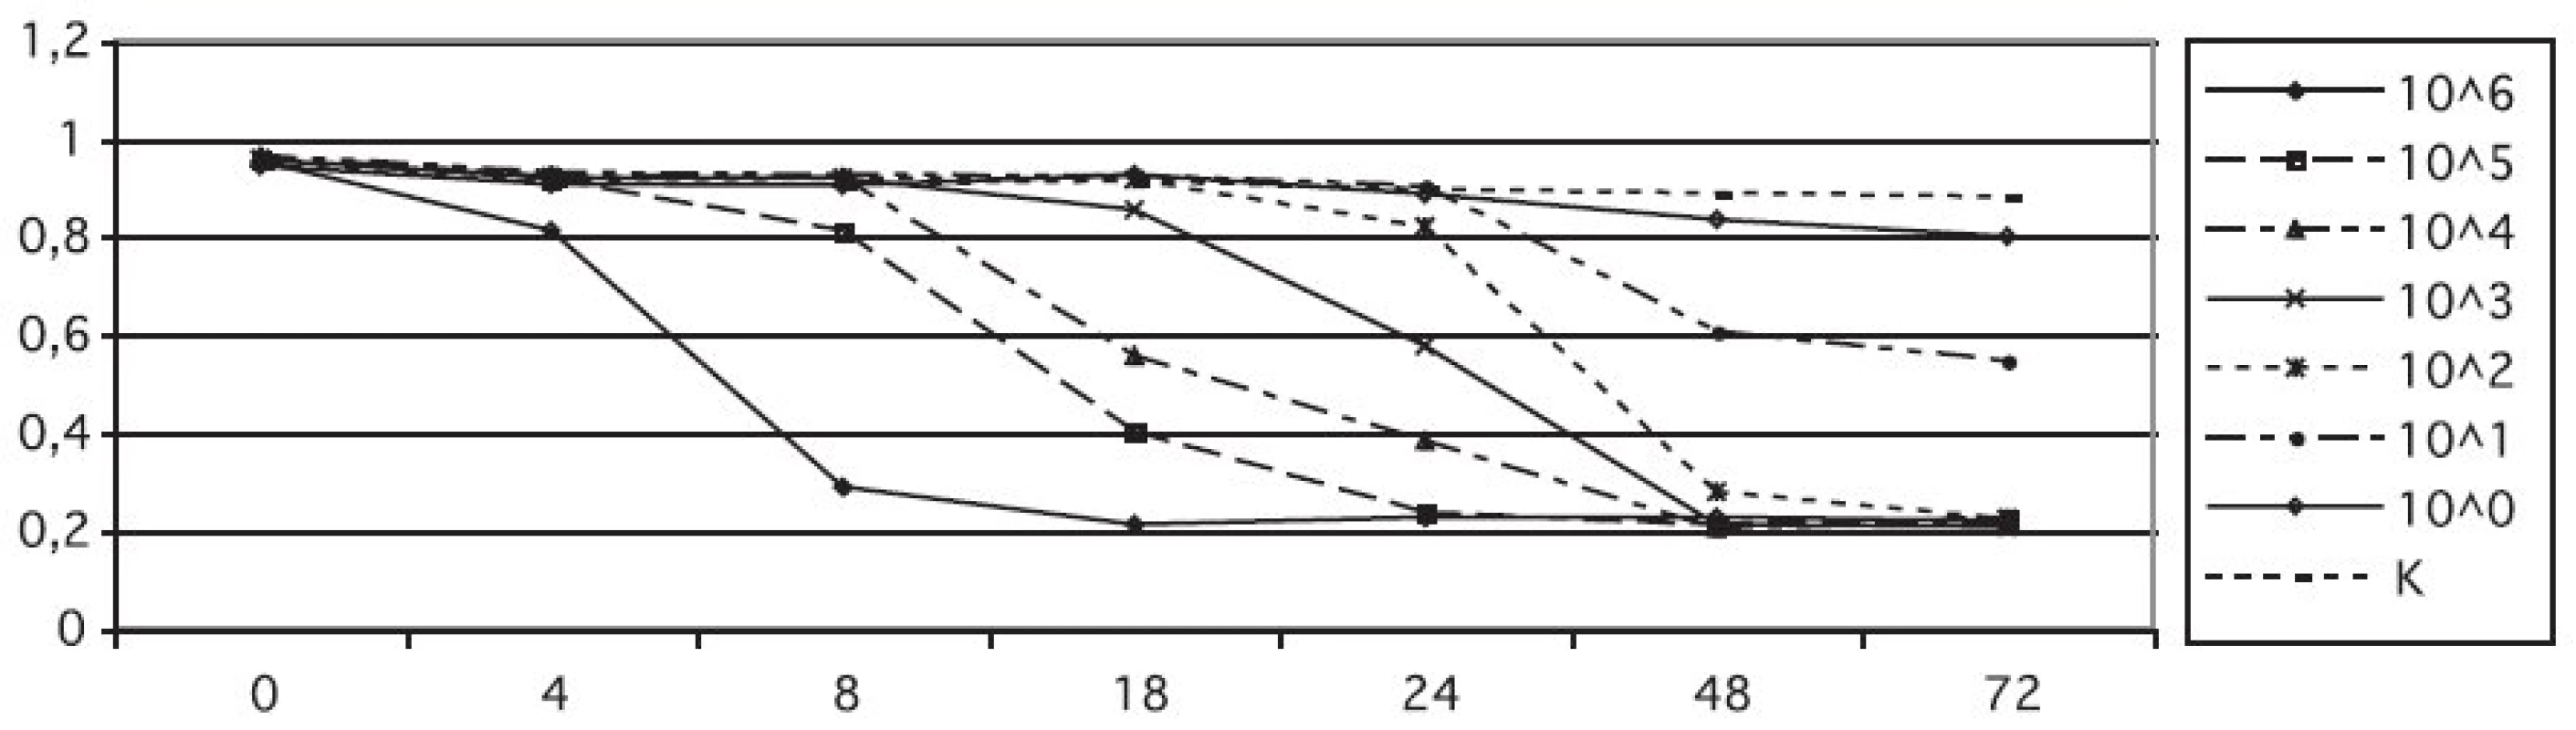 Vliv koncentrace inokula na dynamiku redukce kolorimetrického média s resazurinem
A595, absorbance měřená při λ = 595 nm; t, čas měření; K, negativní kontrola
Fig. 1. Effect of inoculum concentration on the resazurin reduction rate in a colorimetric assay
A595, absorbance measured at λ = 595 nm; t, measurement time; K, negative control